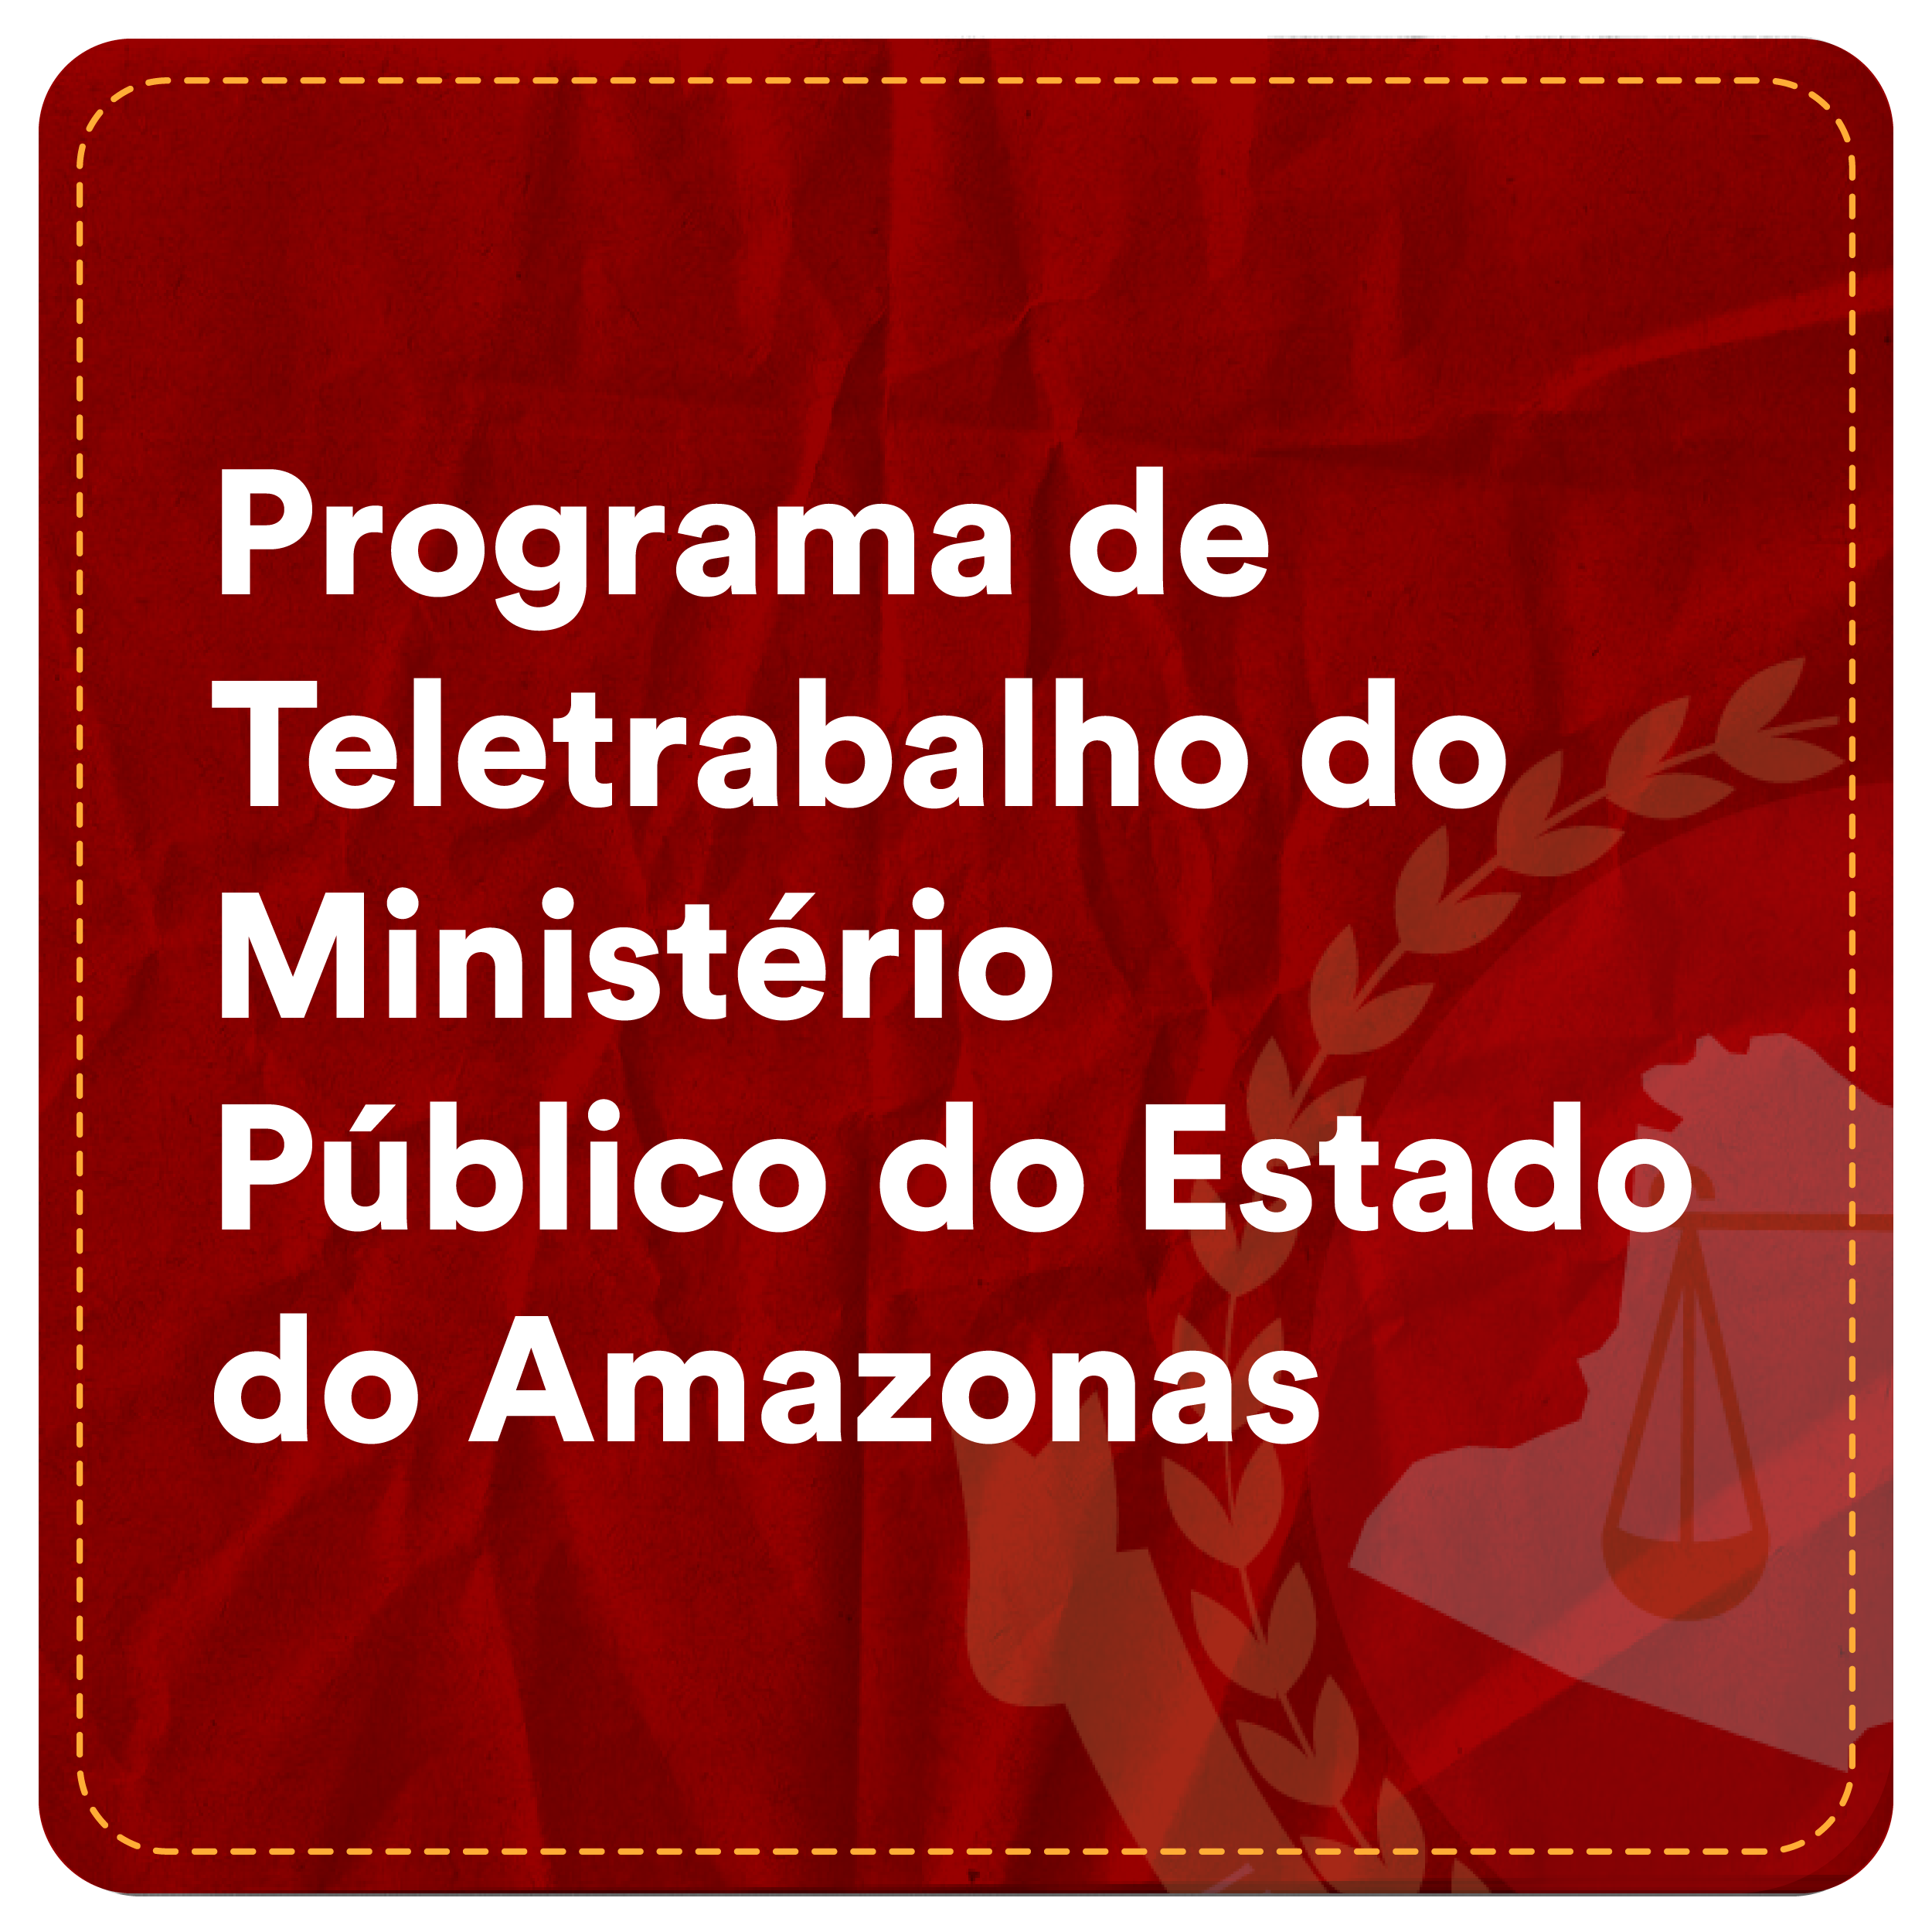 4° Turma - Programa de Teletrabalho do Ministério Público do Estado do Amazonas seleção de ações em lote Programa de Teletrabalho do Ministério Público do Estado do Amazonas